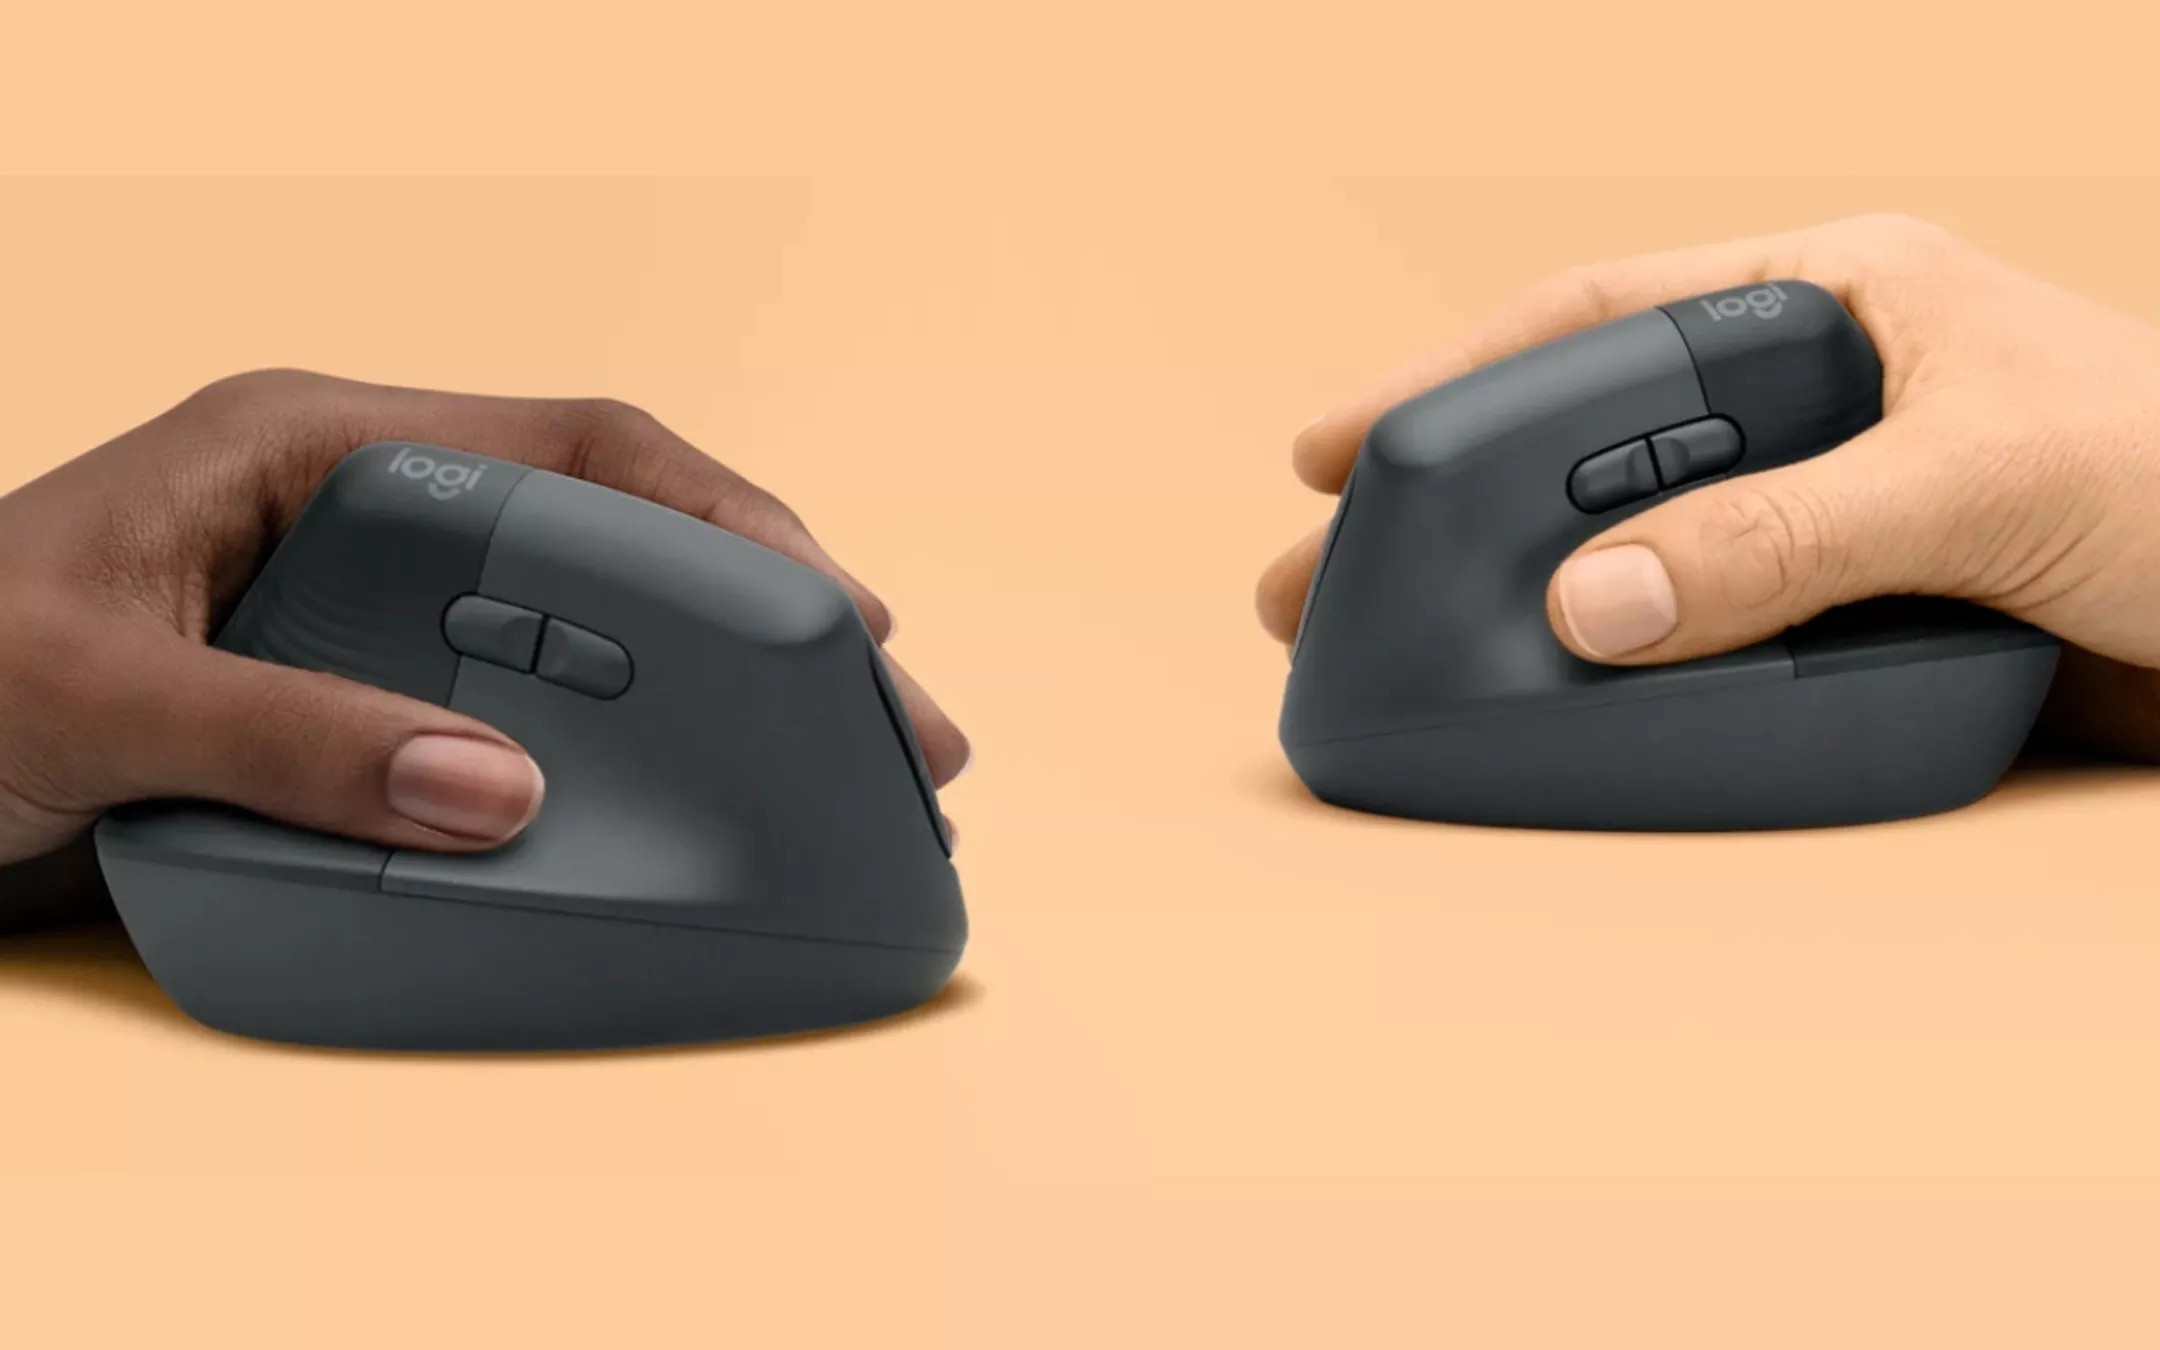 Lift è il nuovo mouse ergonomico di Logitech - Melablog